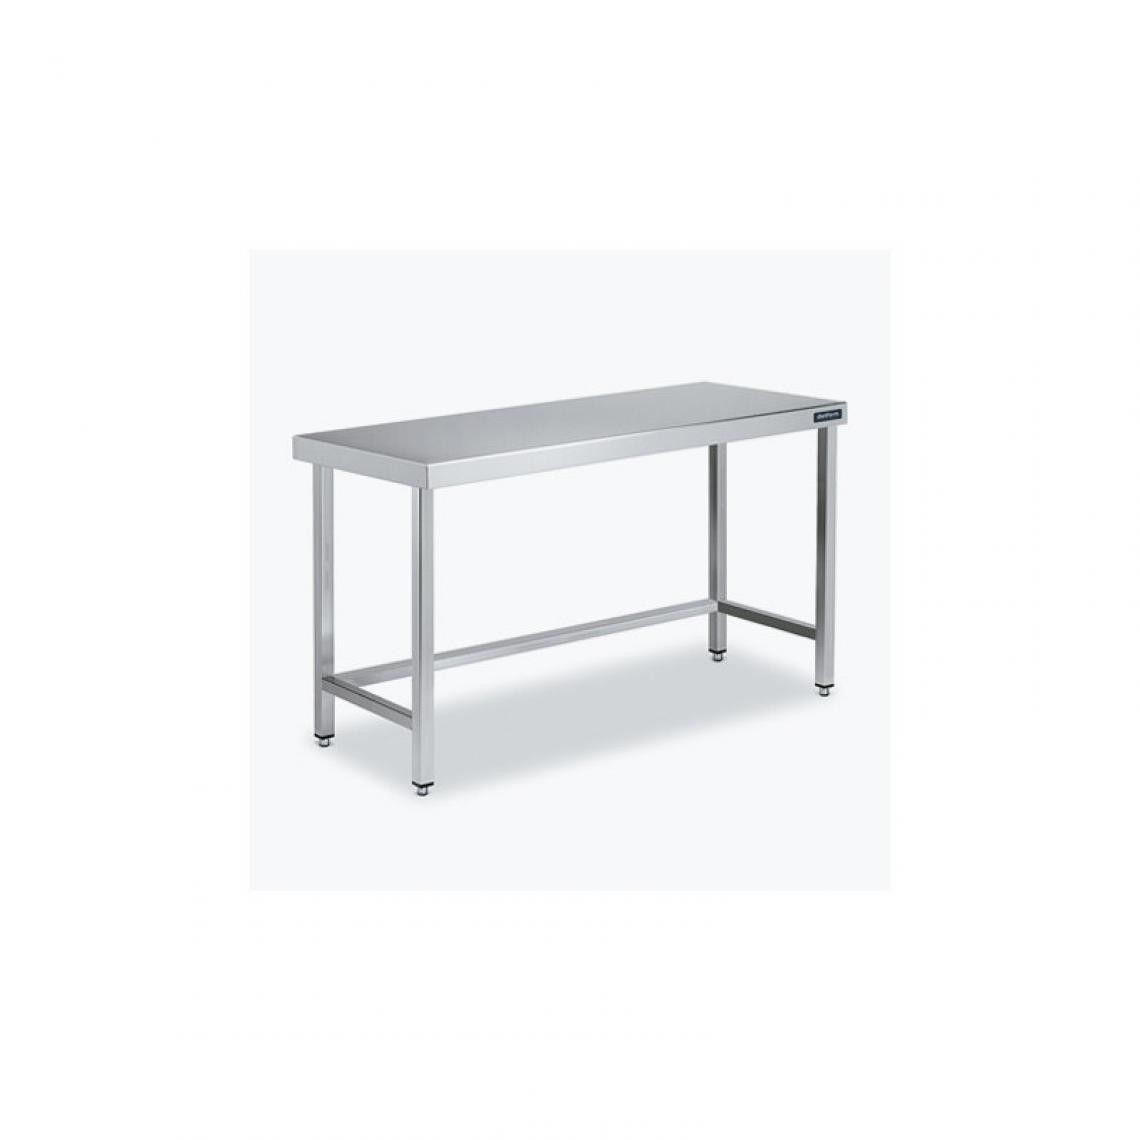 DISTFORM - Table Centrale 600x500 avec Renforts - Distform - Inox 18/101600x500x850mm - Tables à manger